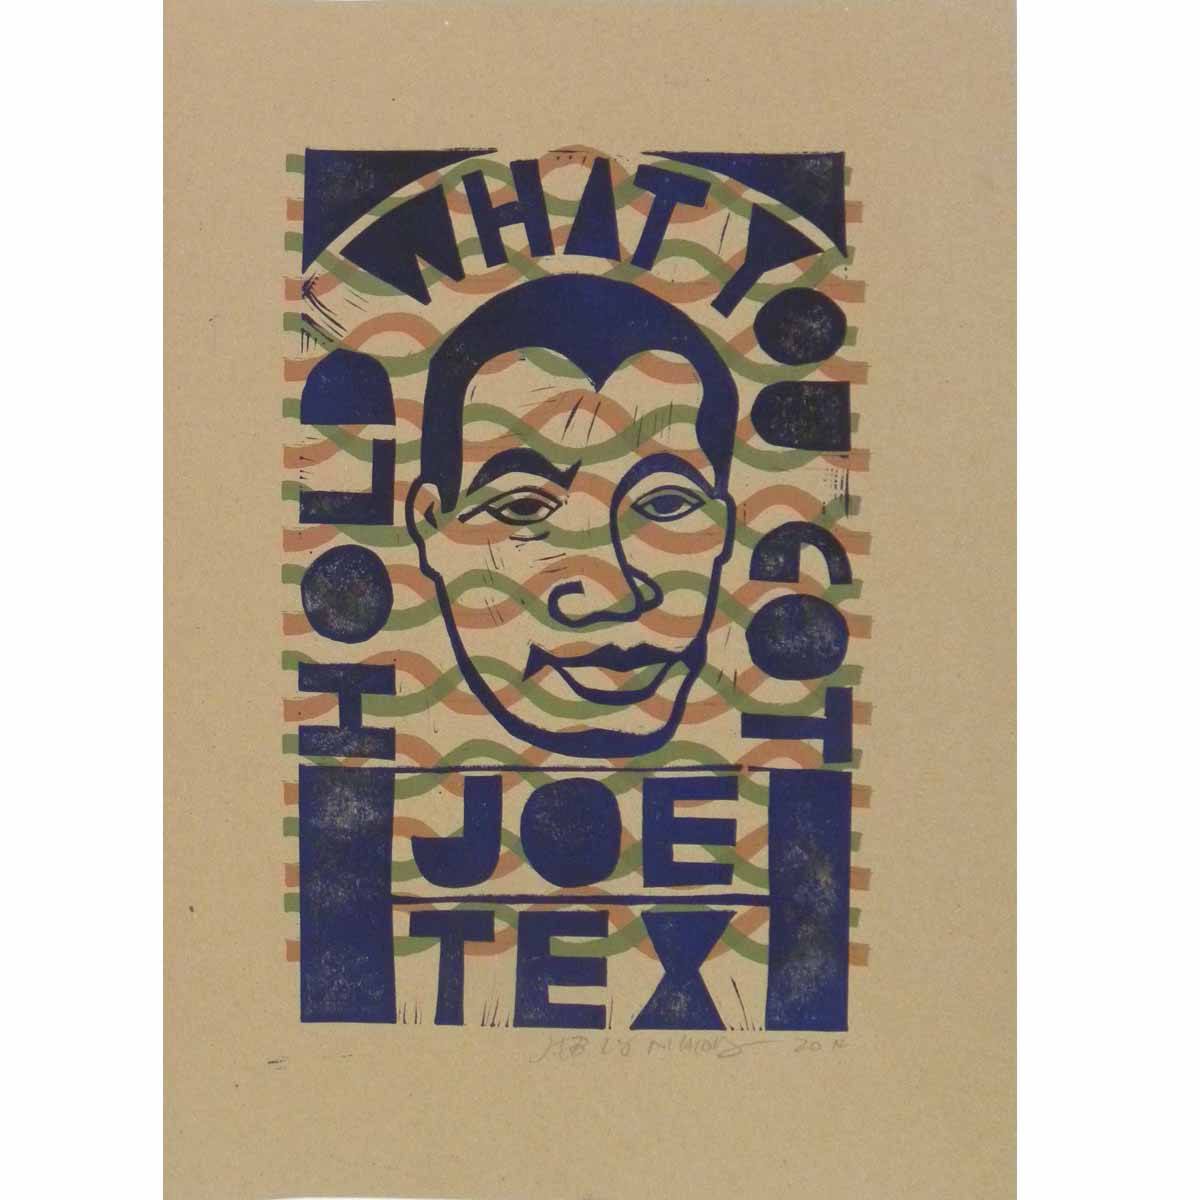 Joe Tex Jeb Loy Nichols